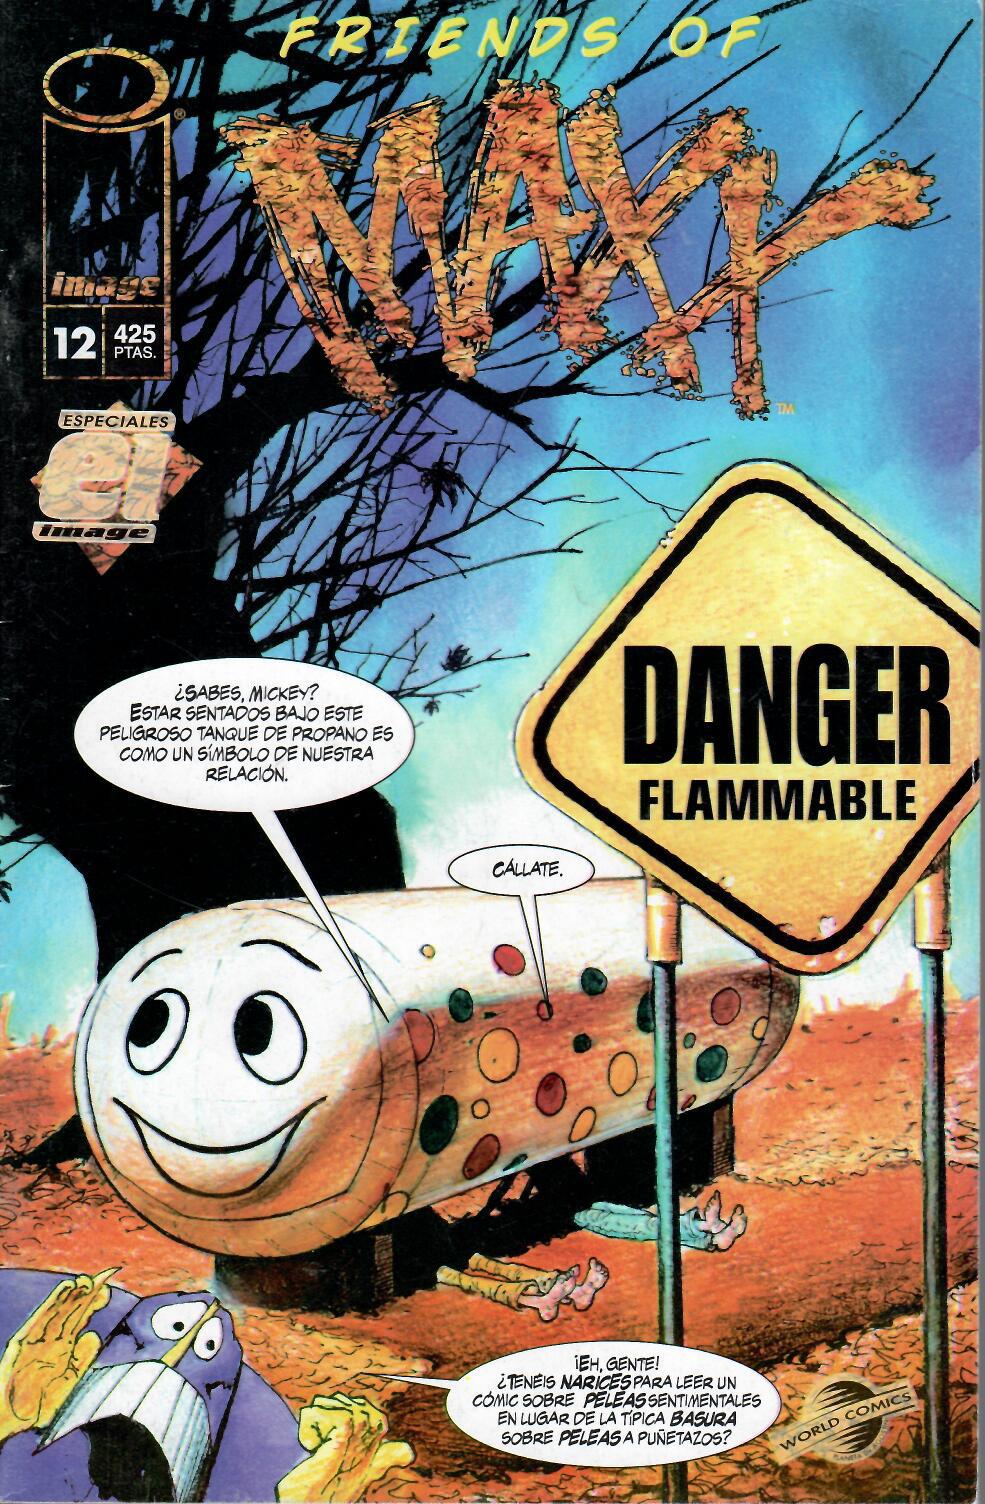 Especiales Image. World Comics 1996. Nº 12